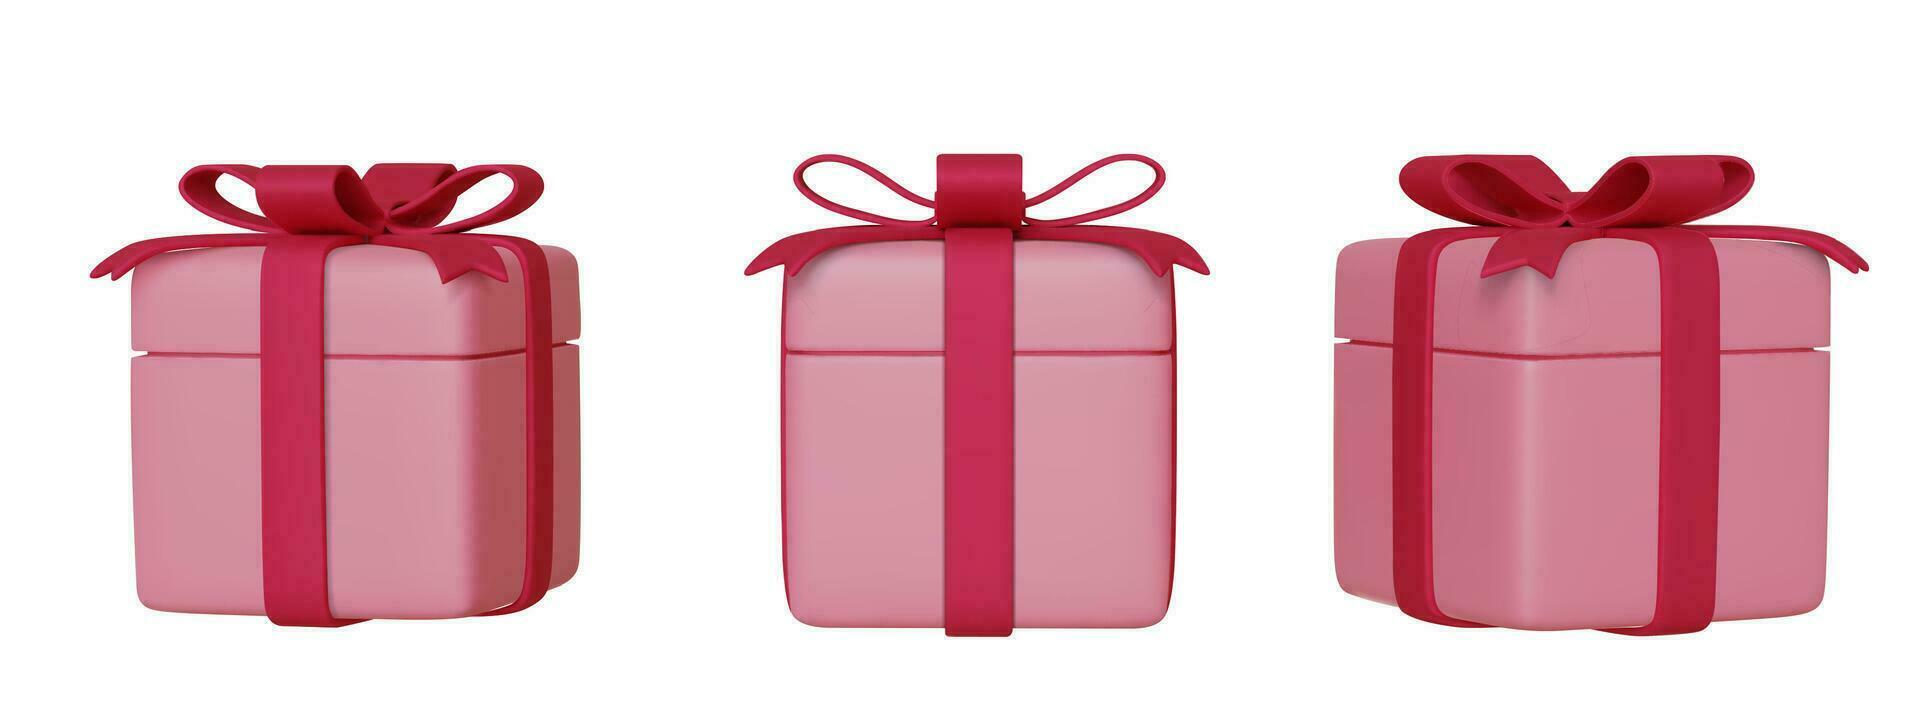 uppsättning av realistisk rosa 3d gåvor låda med bågar och band, isolerat på vit bakgrund. vektor illustration